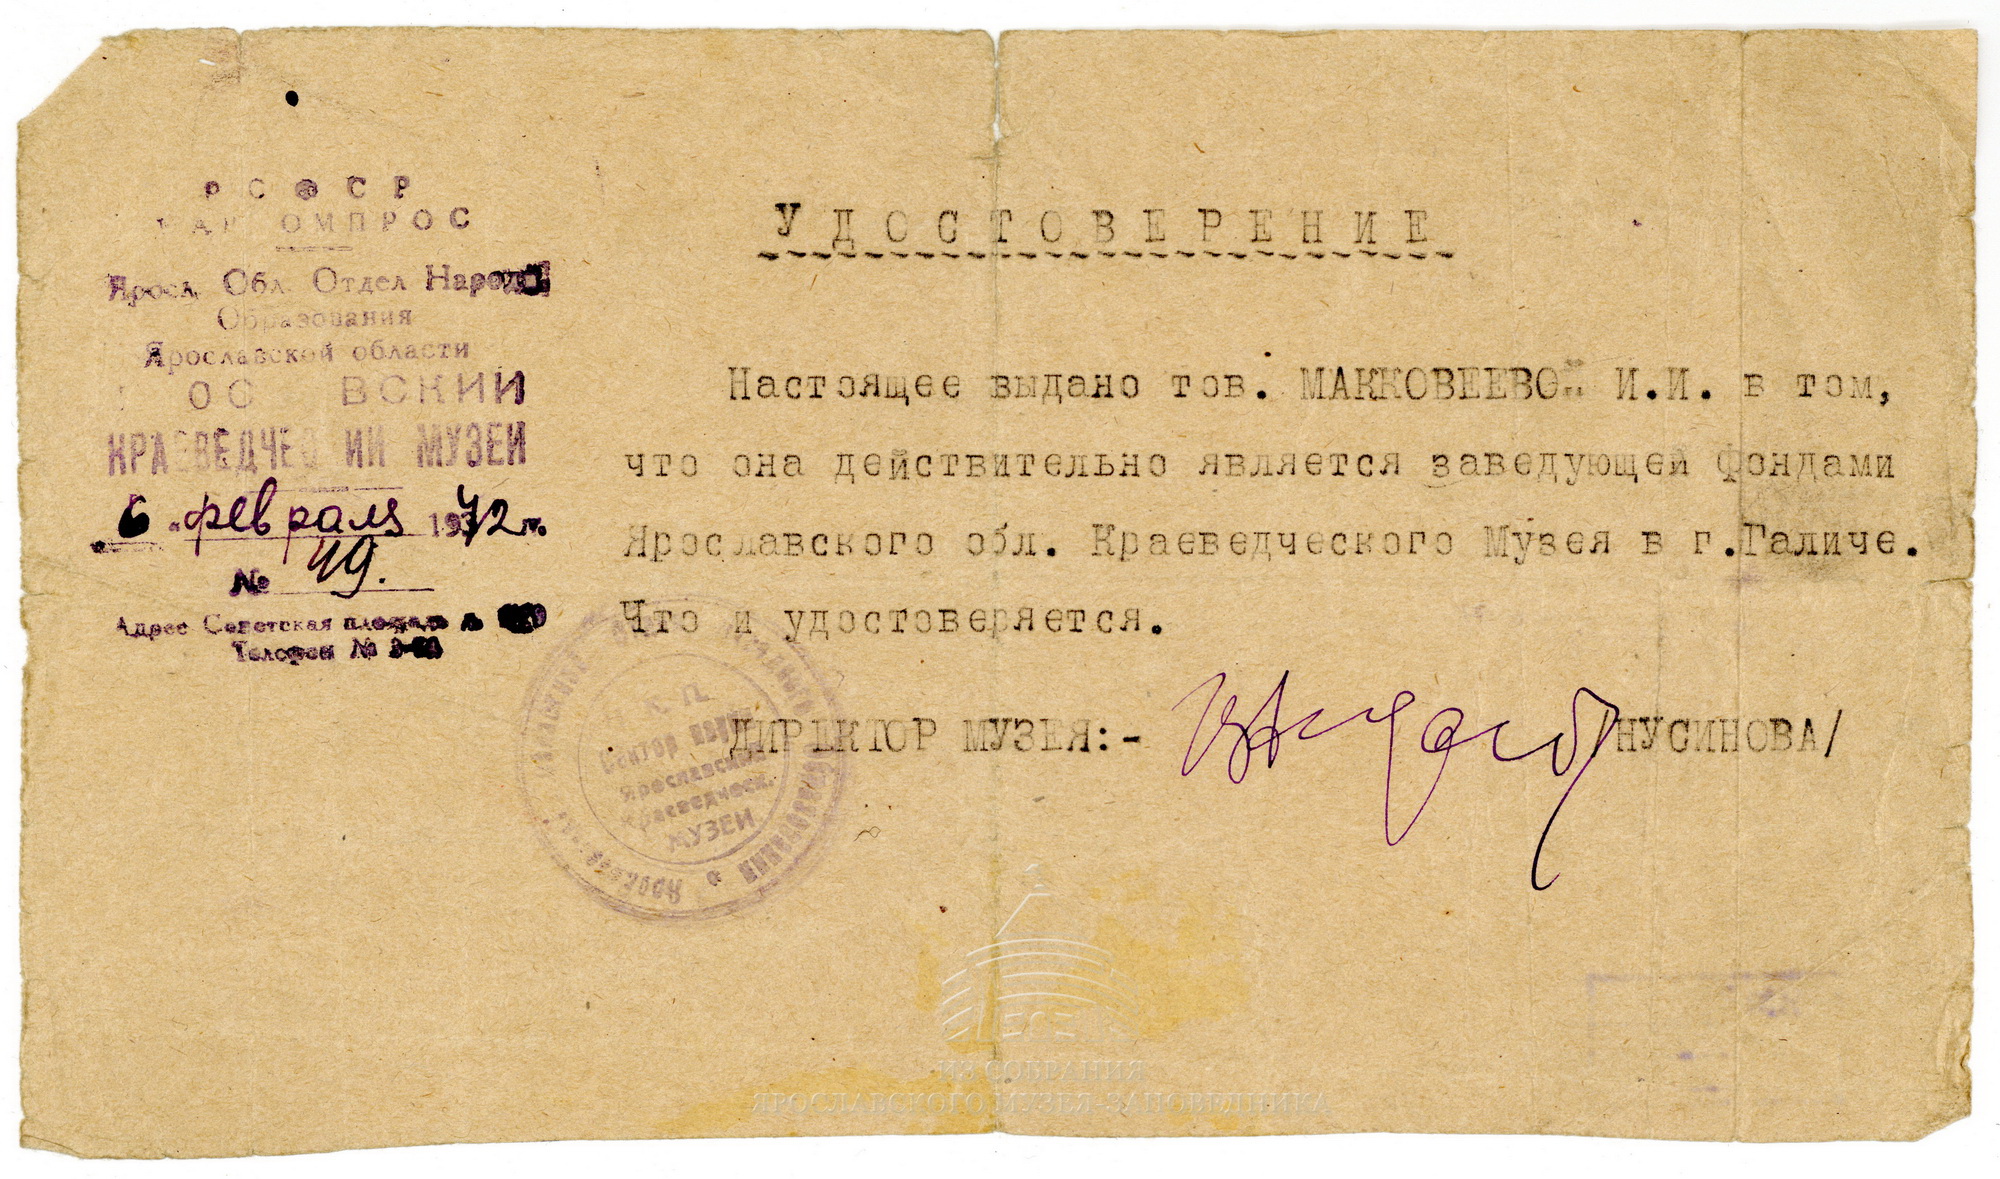 Удостоверение И. И. Макковеевой, заведующей фондами Ярославского областного краеведческого музея, эвакуированного в г. Галич. 6 февраля 1942 г.